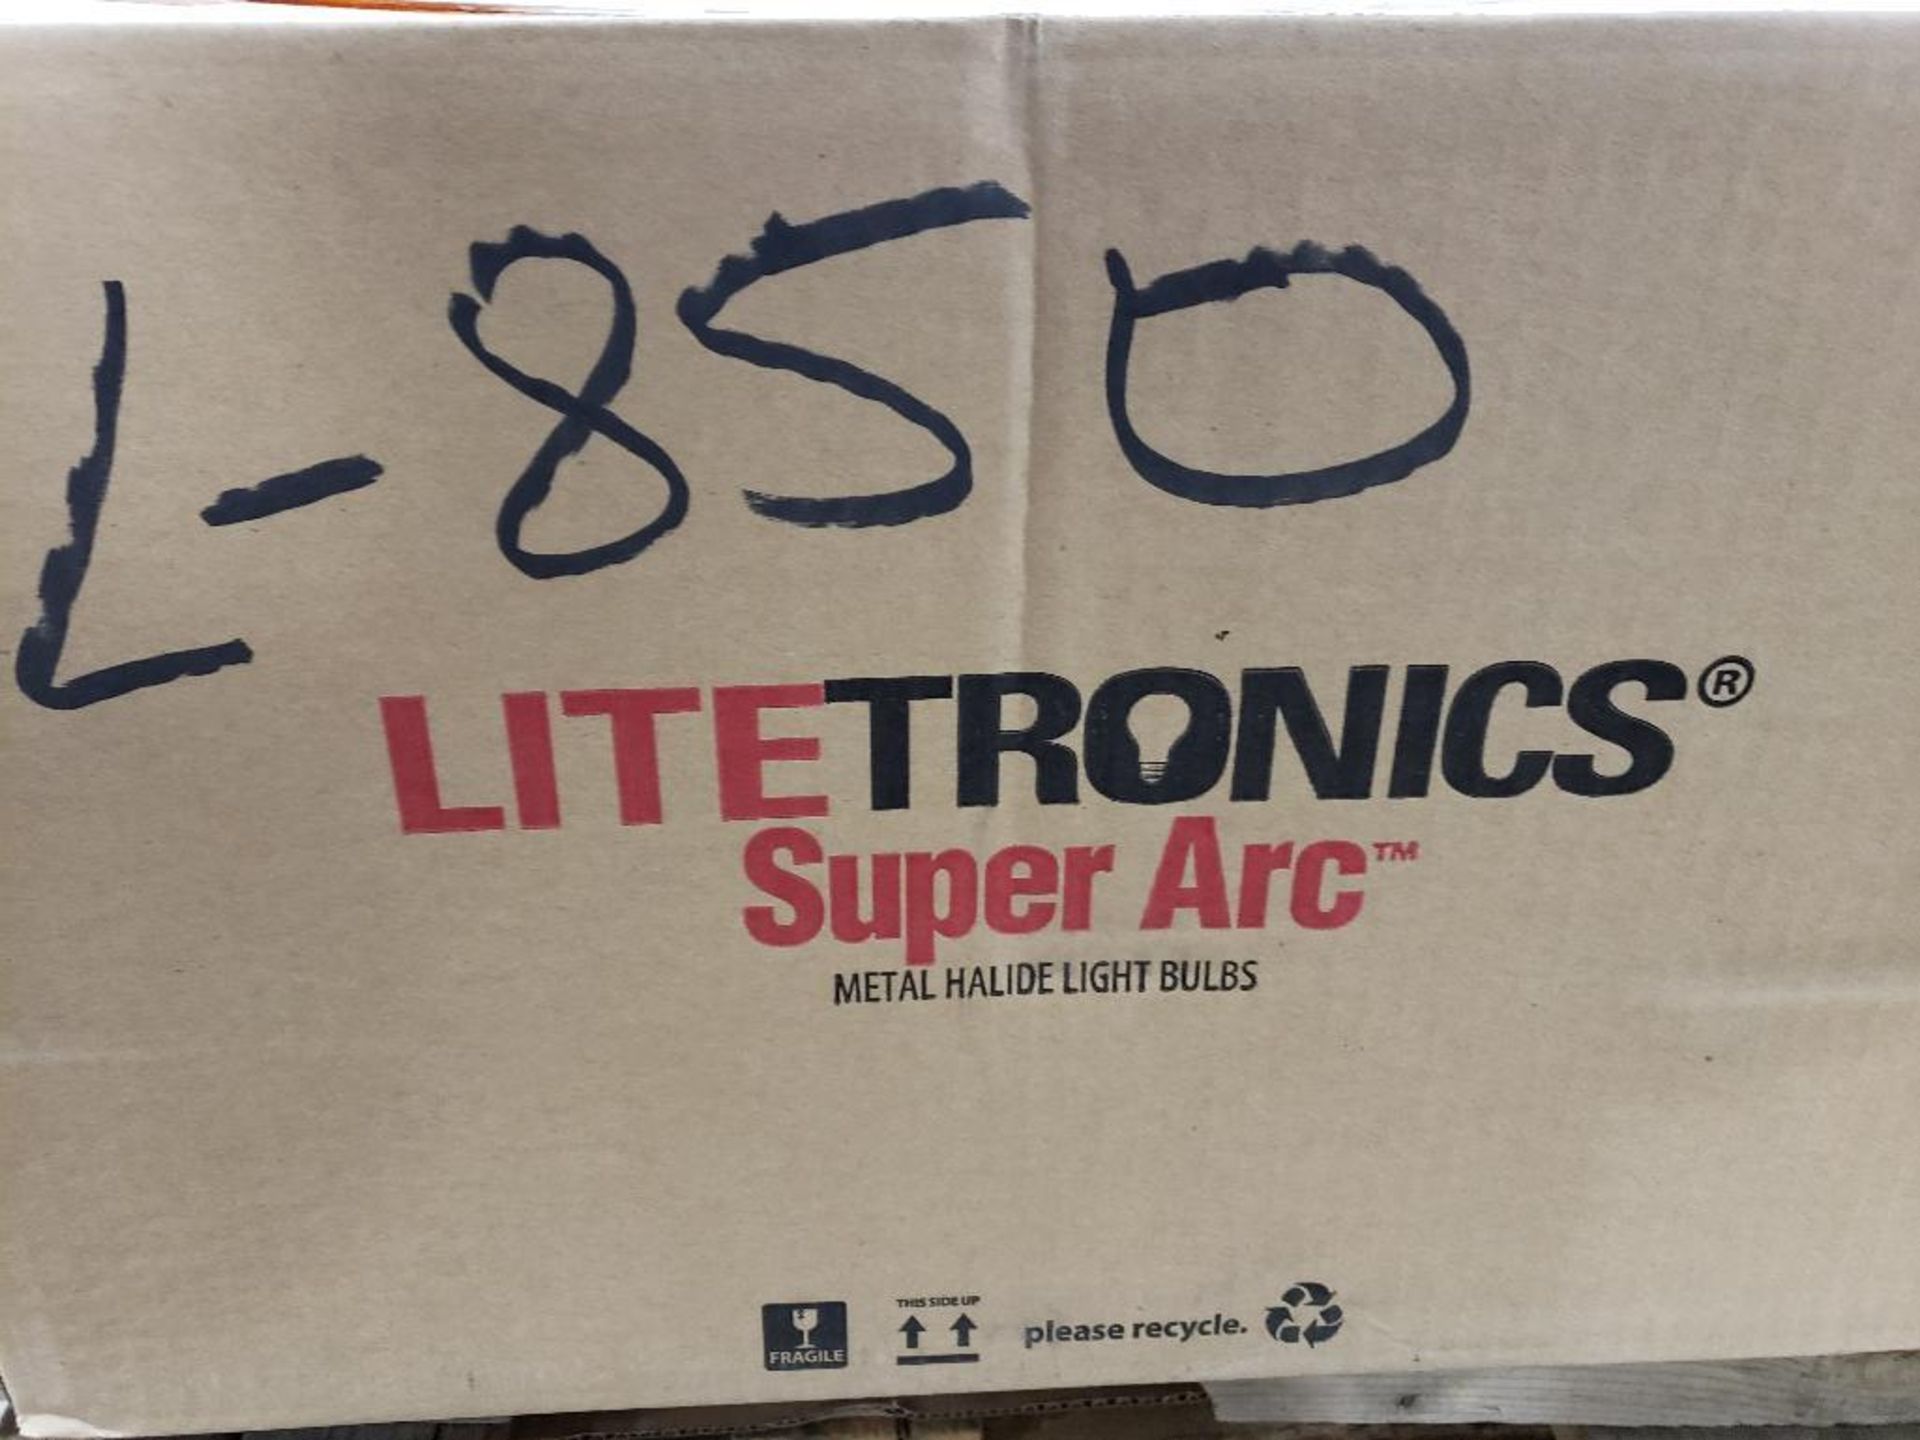 Qty 12 - Litetronics bulb. 400 watt metal halide. Part number L-850. New in bulk box. - Image 3 of 3